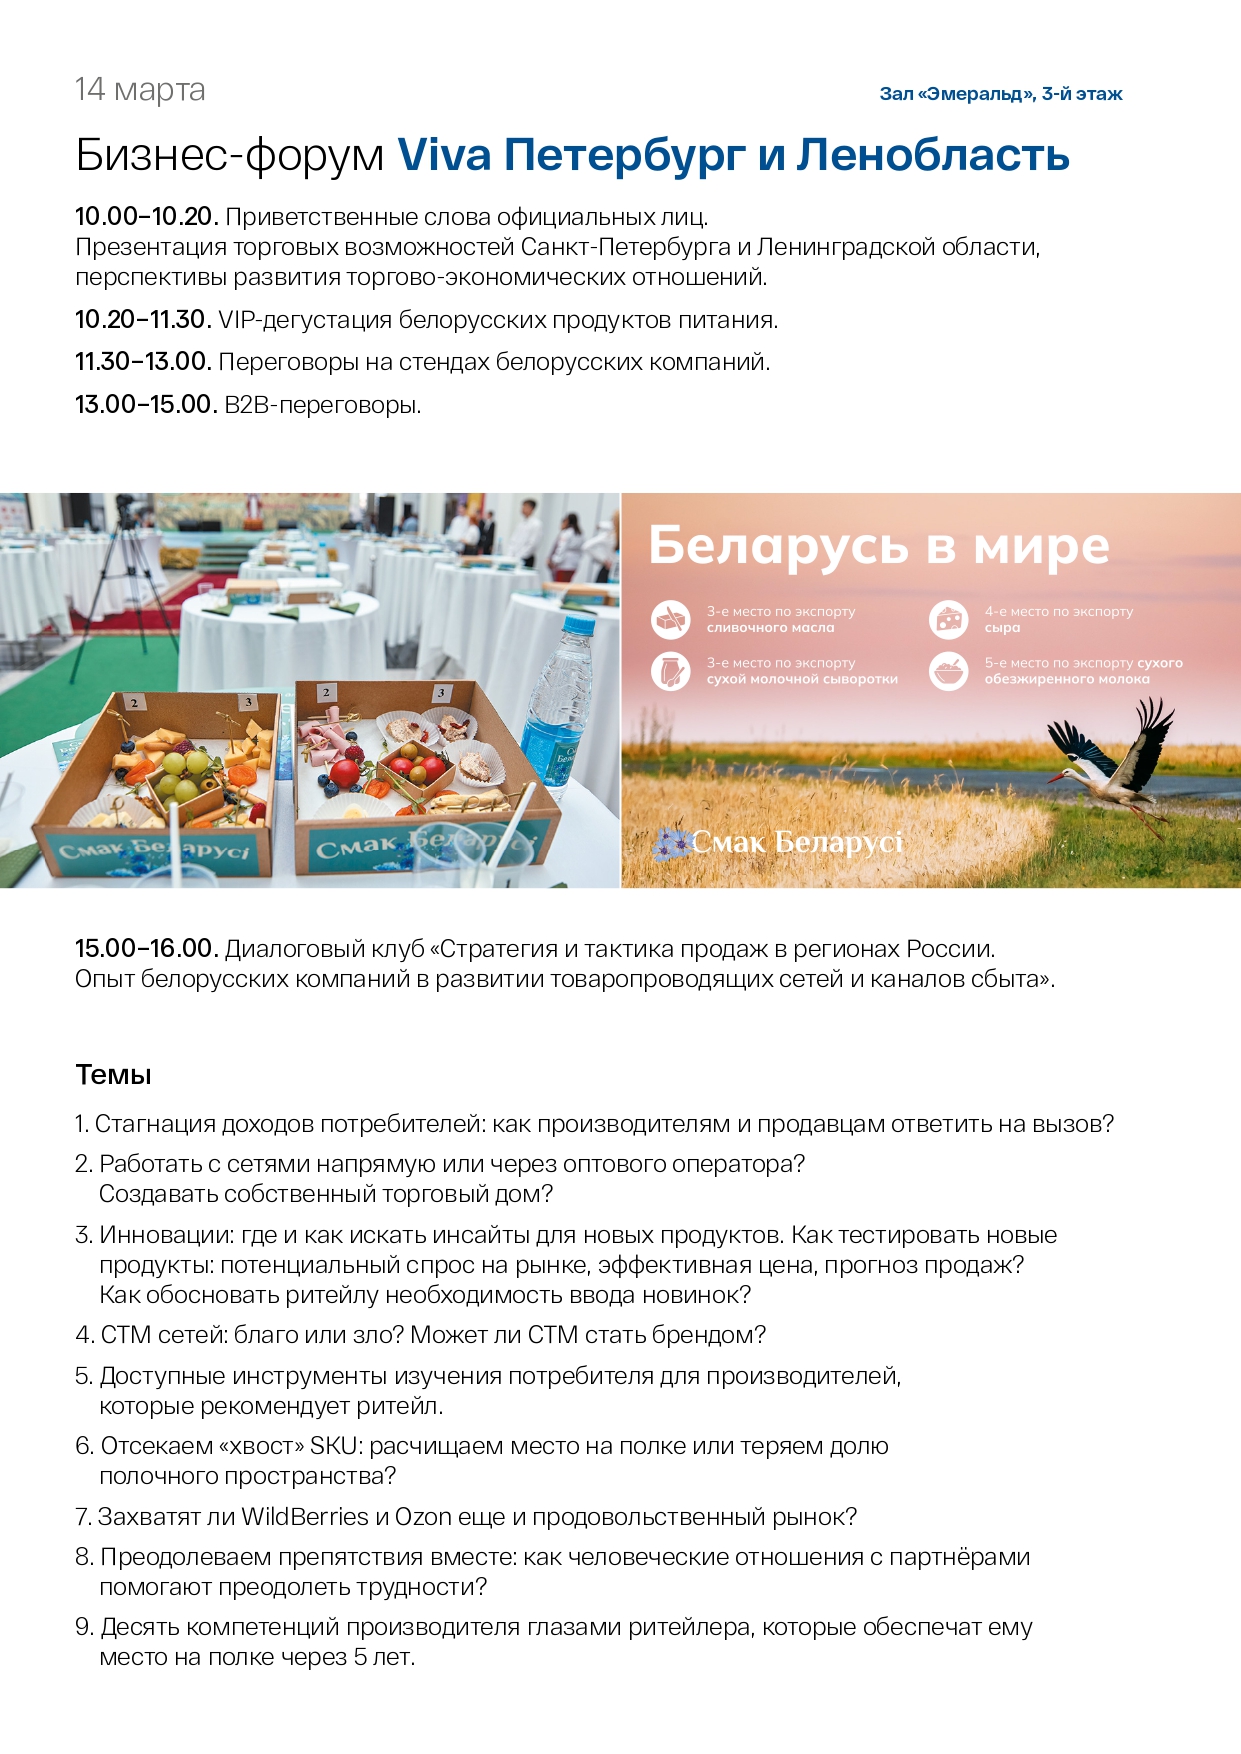 Белорусский продовольственный Форум page 0002